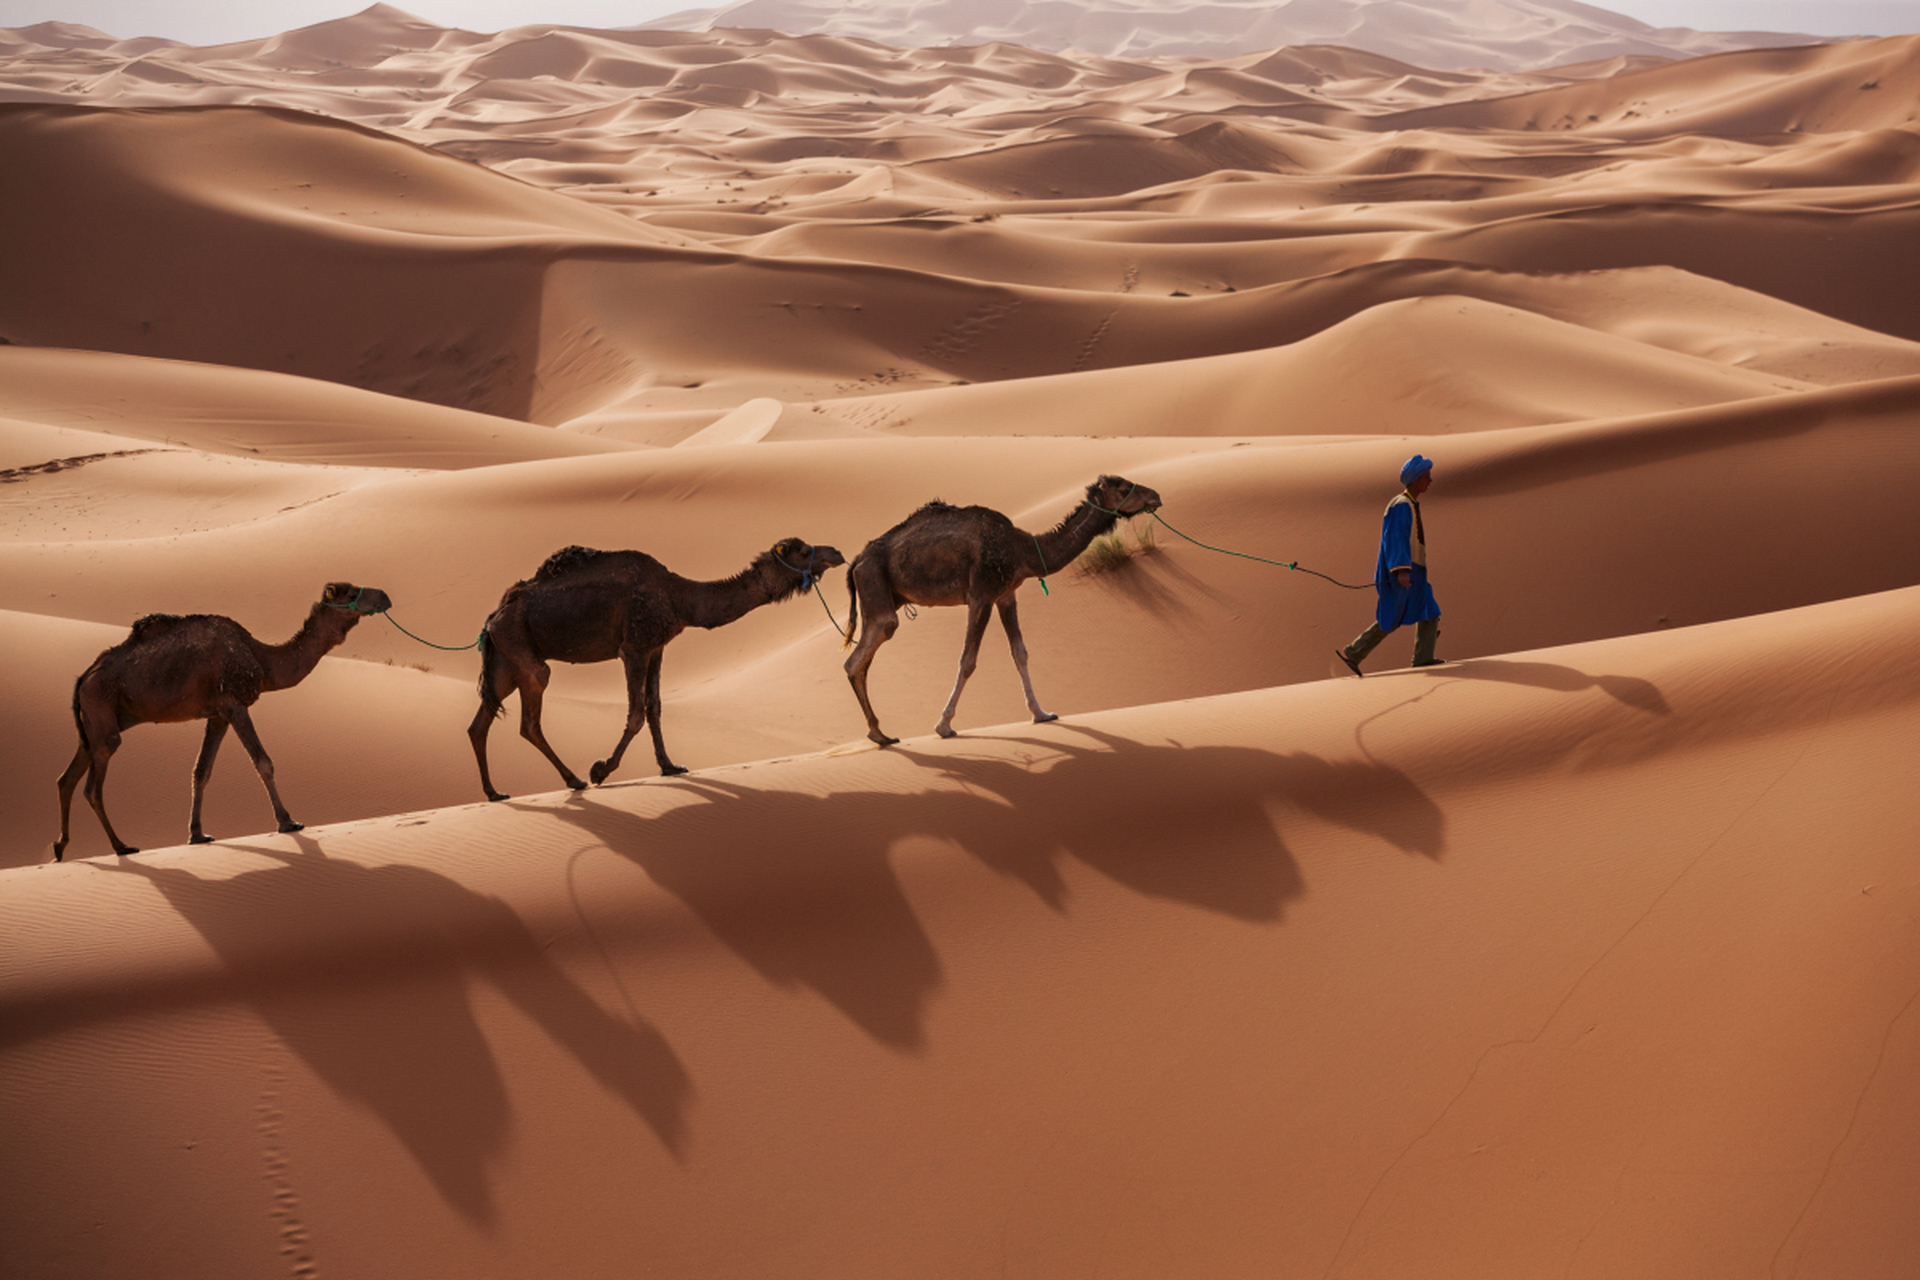 撒哈拉沙漠,地球上最壮观的热带荒漠!气候极端,年降水量几乎为零